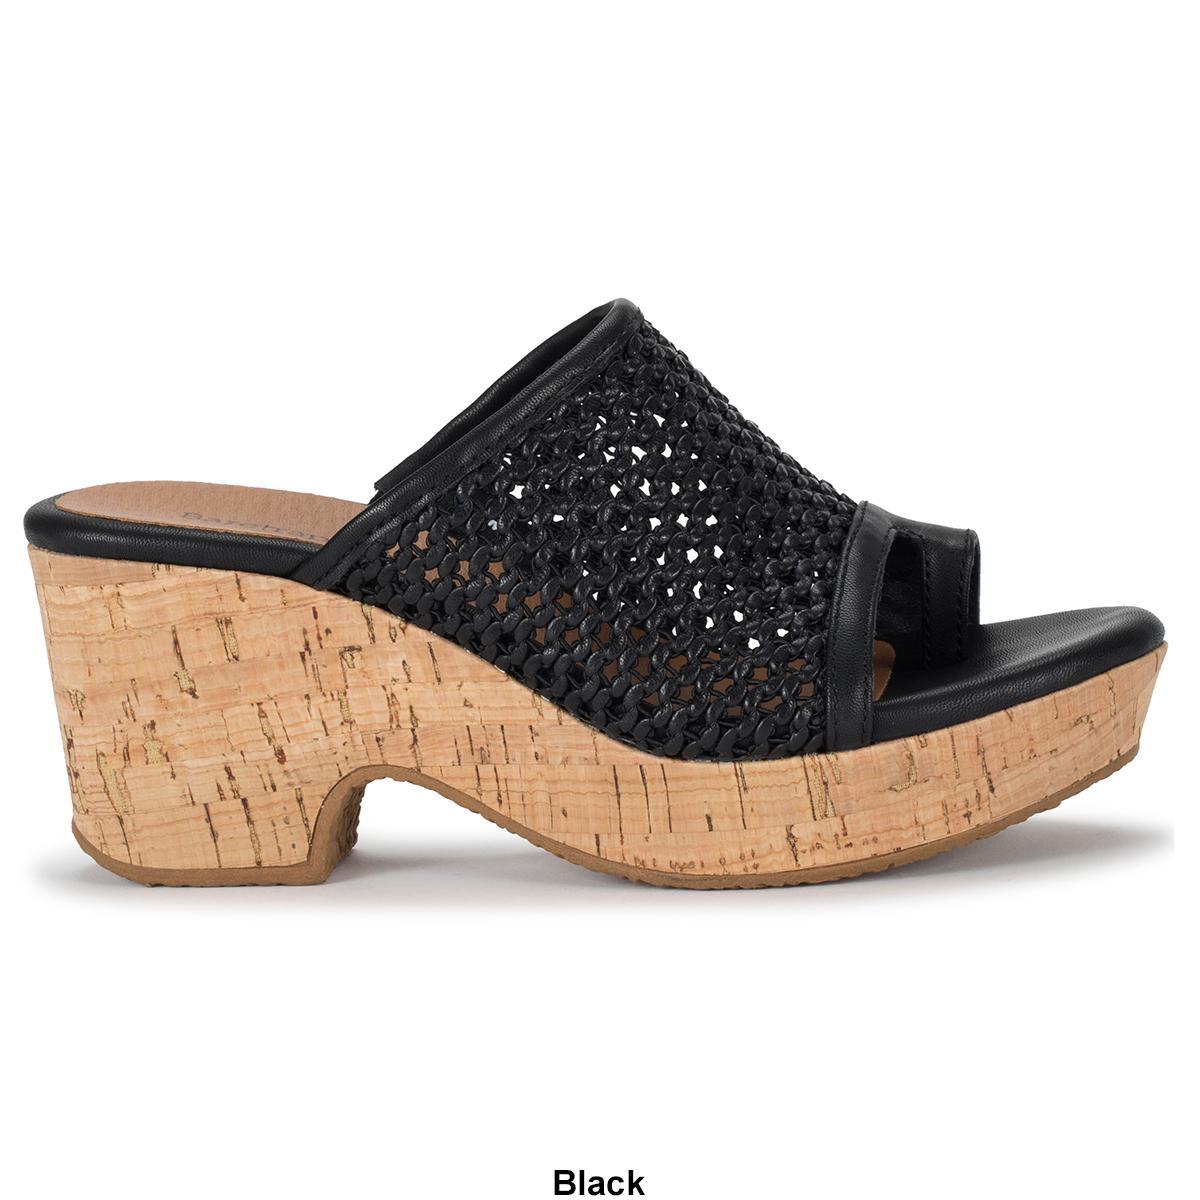 Baretraps Women's Bethie Wedge Sandals, 7.5M Product Image